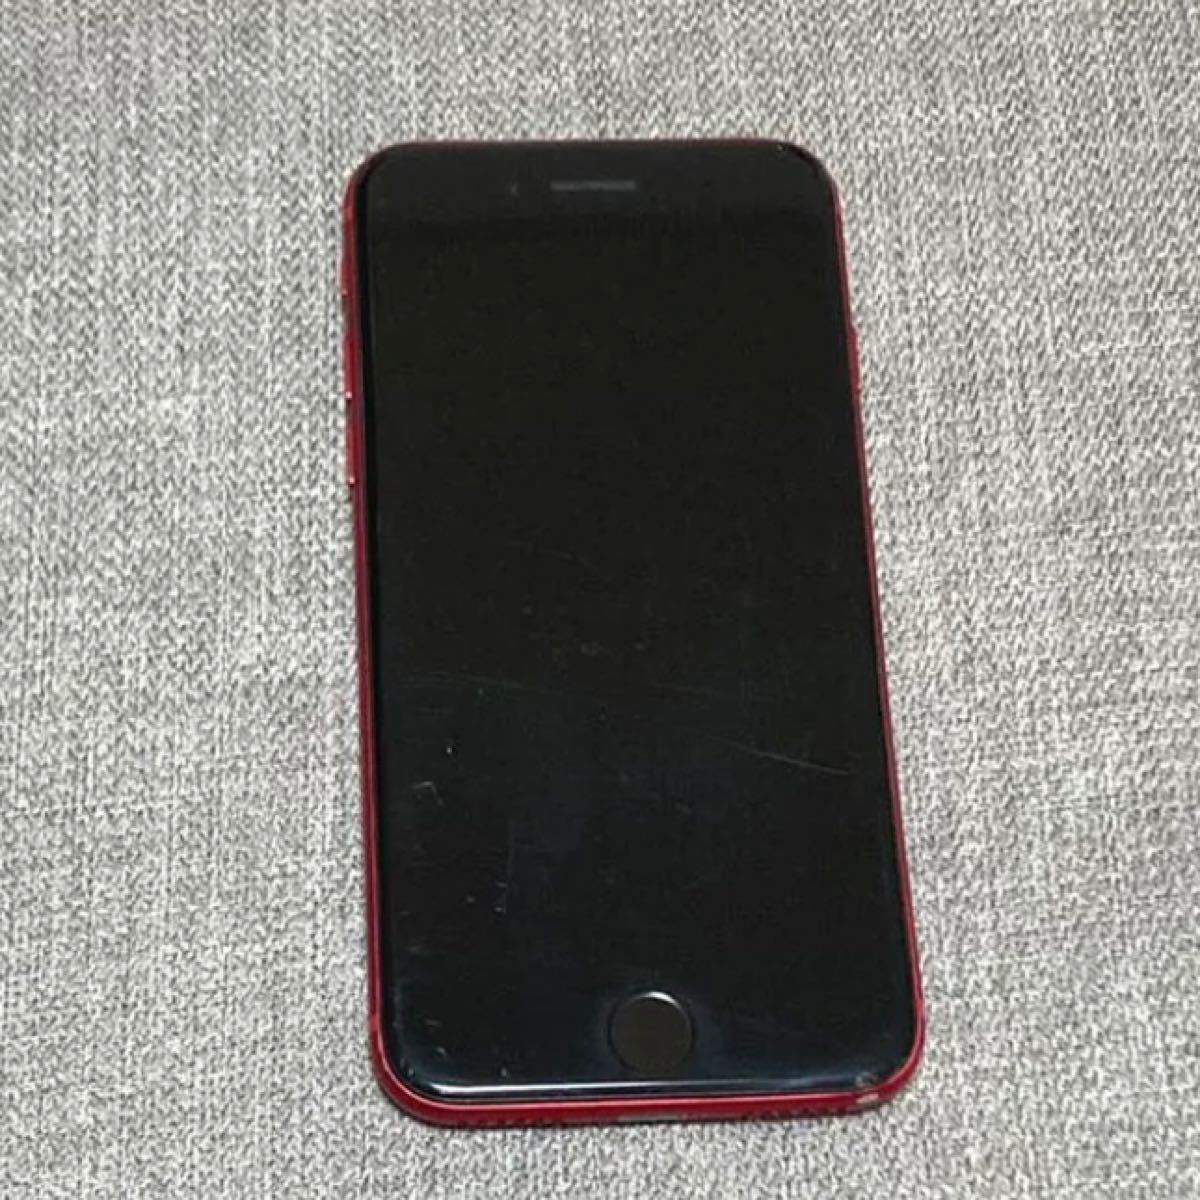 【SIMフリー】iPhone SE 第2世代 PRODUCT RED 128GB ジャンク品